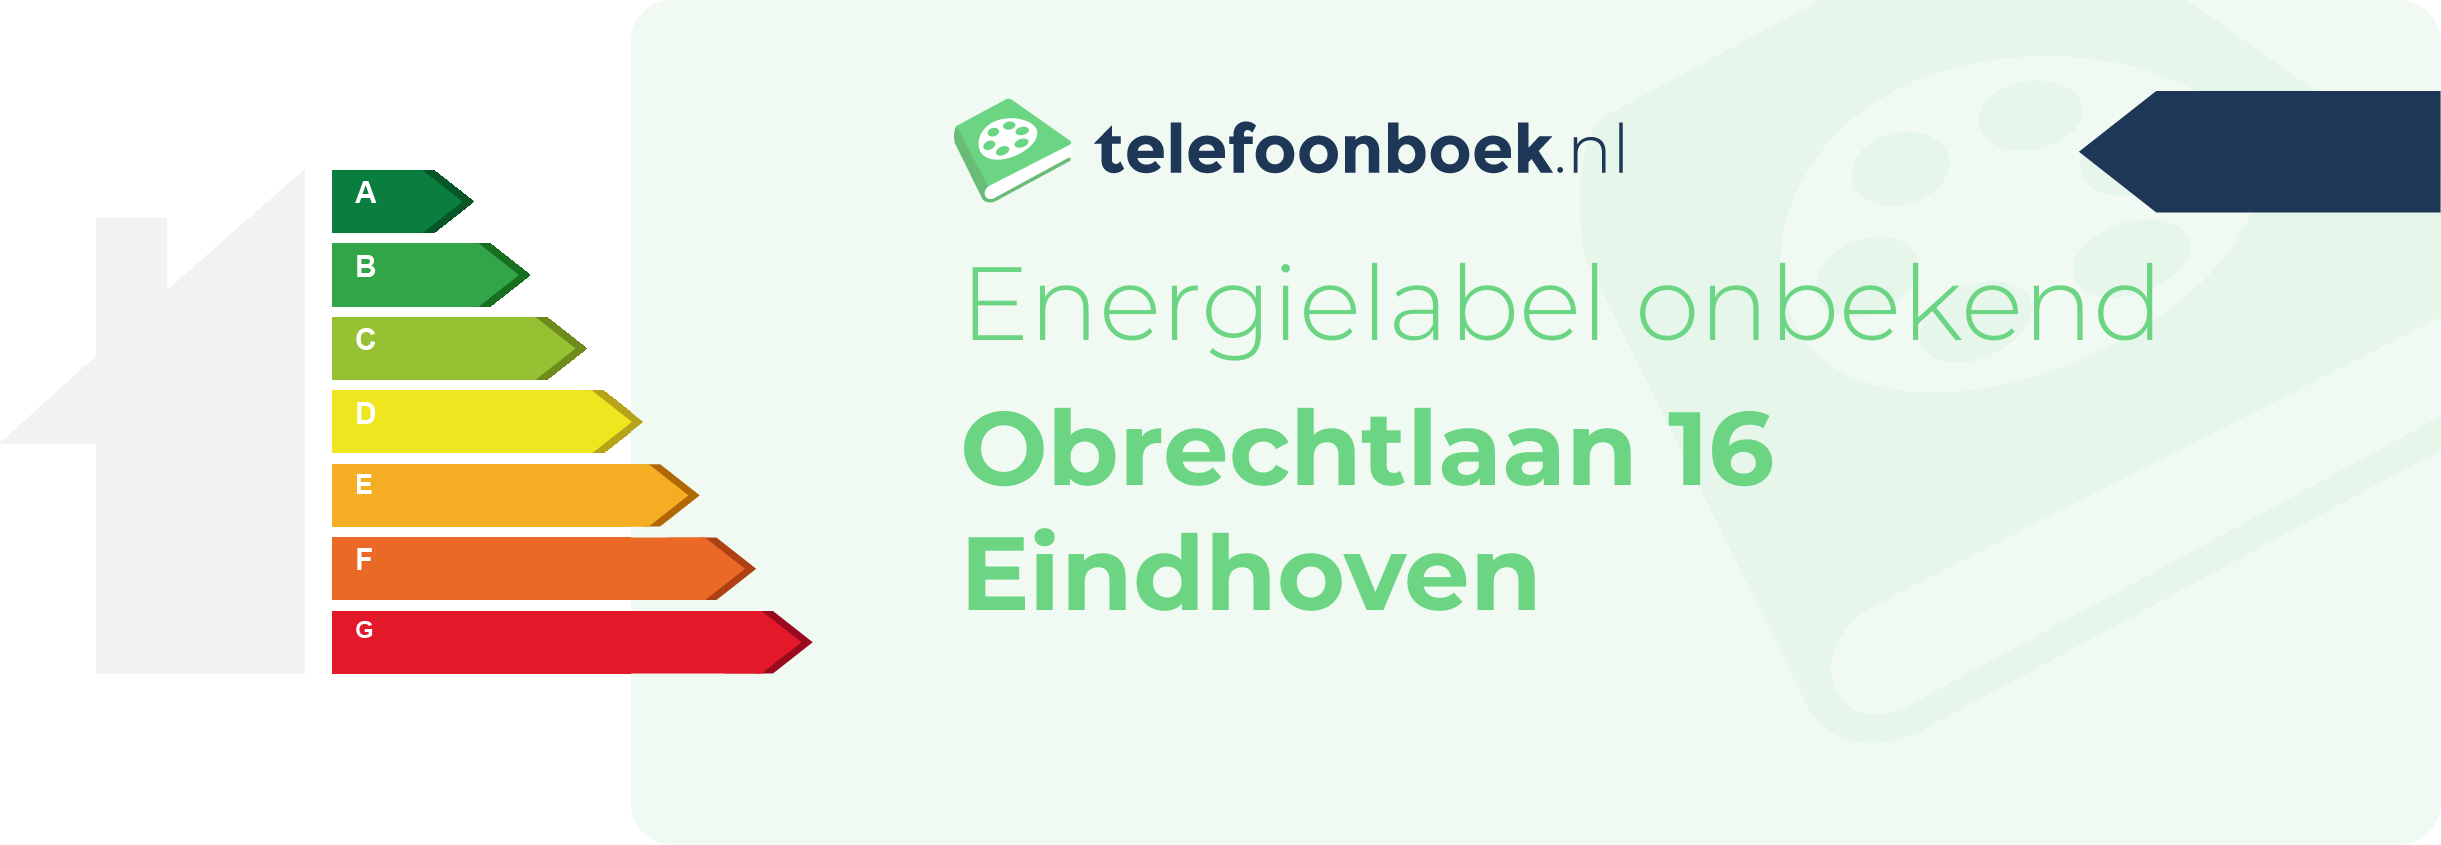 Energielabel Obrechtlaan 16 Eindhoven